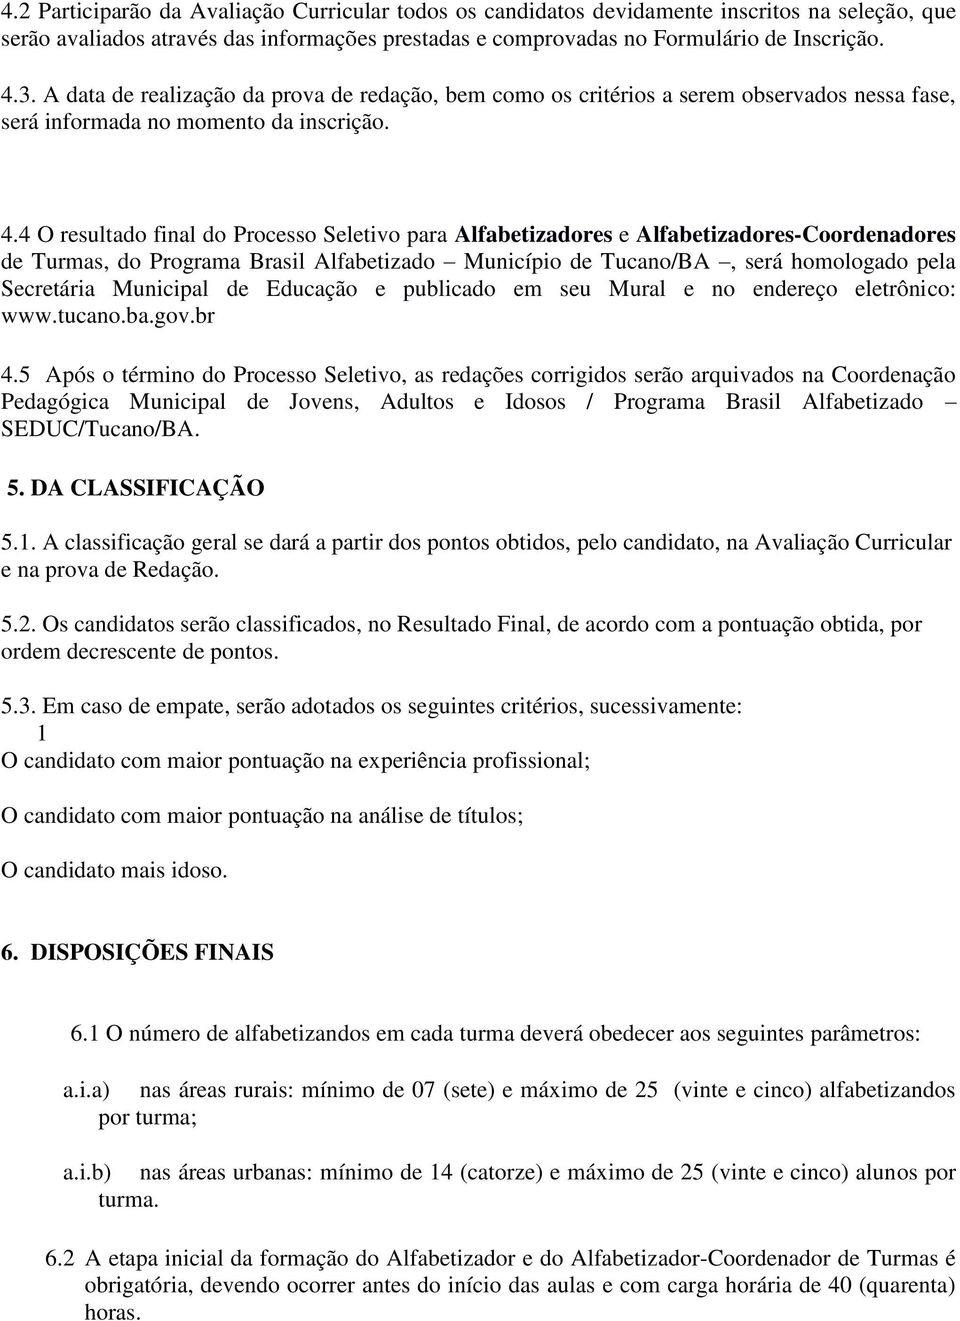 4 O resultado final do Processo Seletivo para Alfabetizadores e Alfabetizadores-Coordenadores de Turmas, do Programa Brasil Alfabetizado Município de Tucano/BA, será homologado pela Secretária